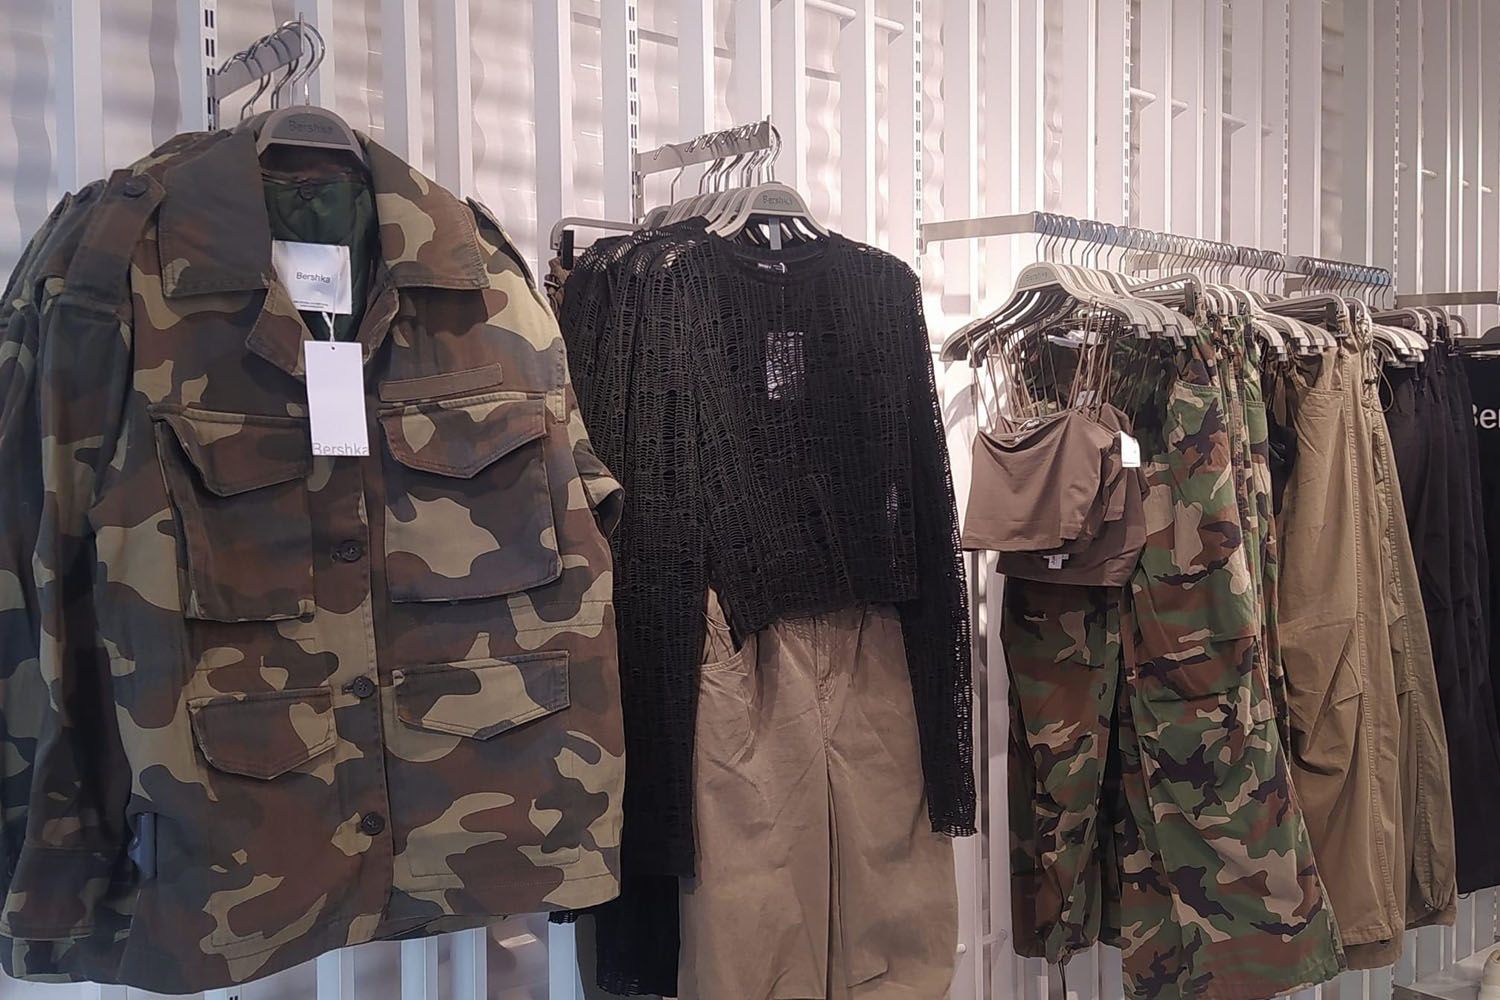 Polémica en Twitter por la ropa de que vende Bershka en plena guerra de Ucrania